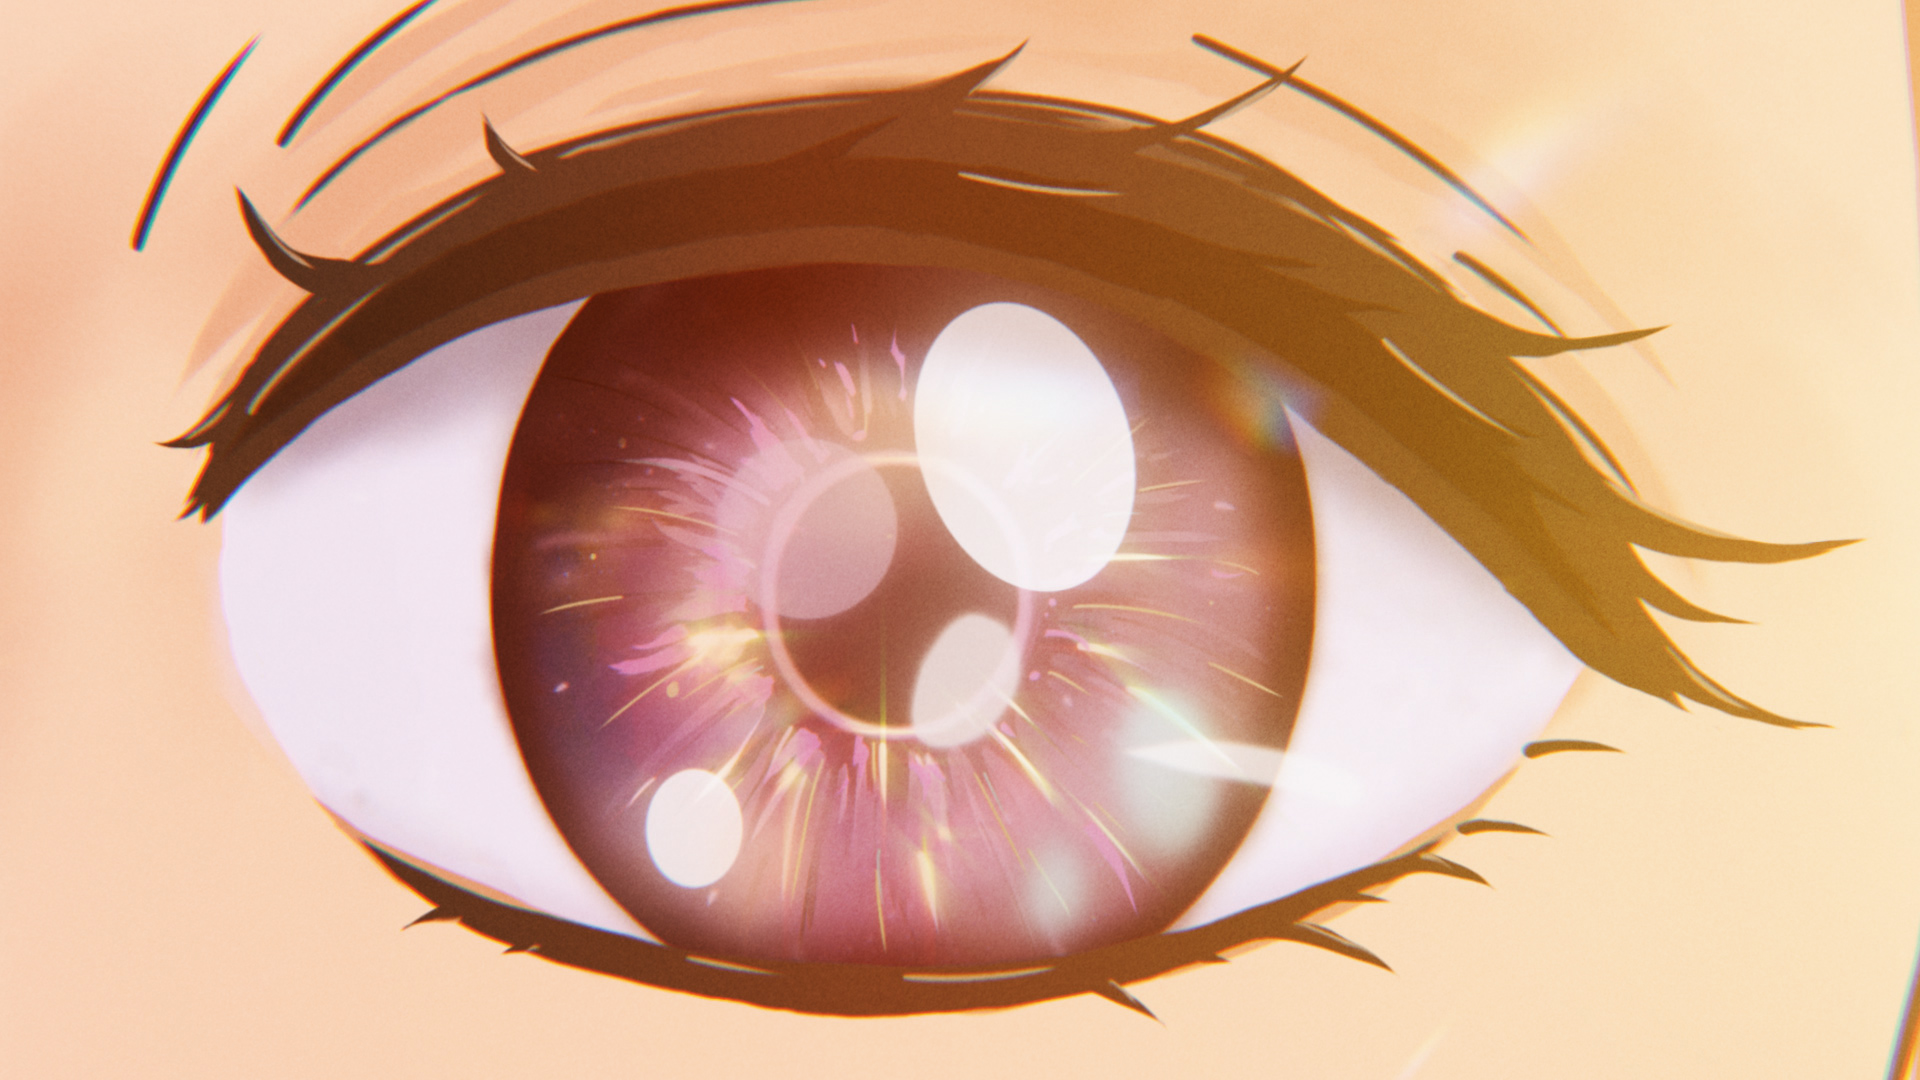 Anime 1920x1080 digital art glowing glowing eyes anime sparkles closeup anime girls eyelashes eyes looking at viewer